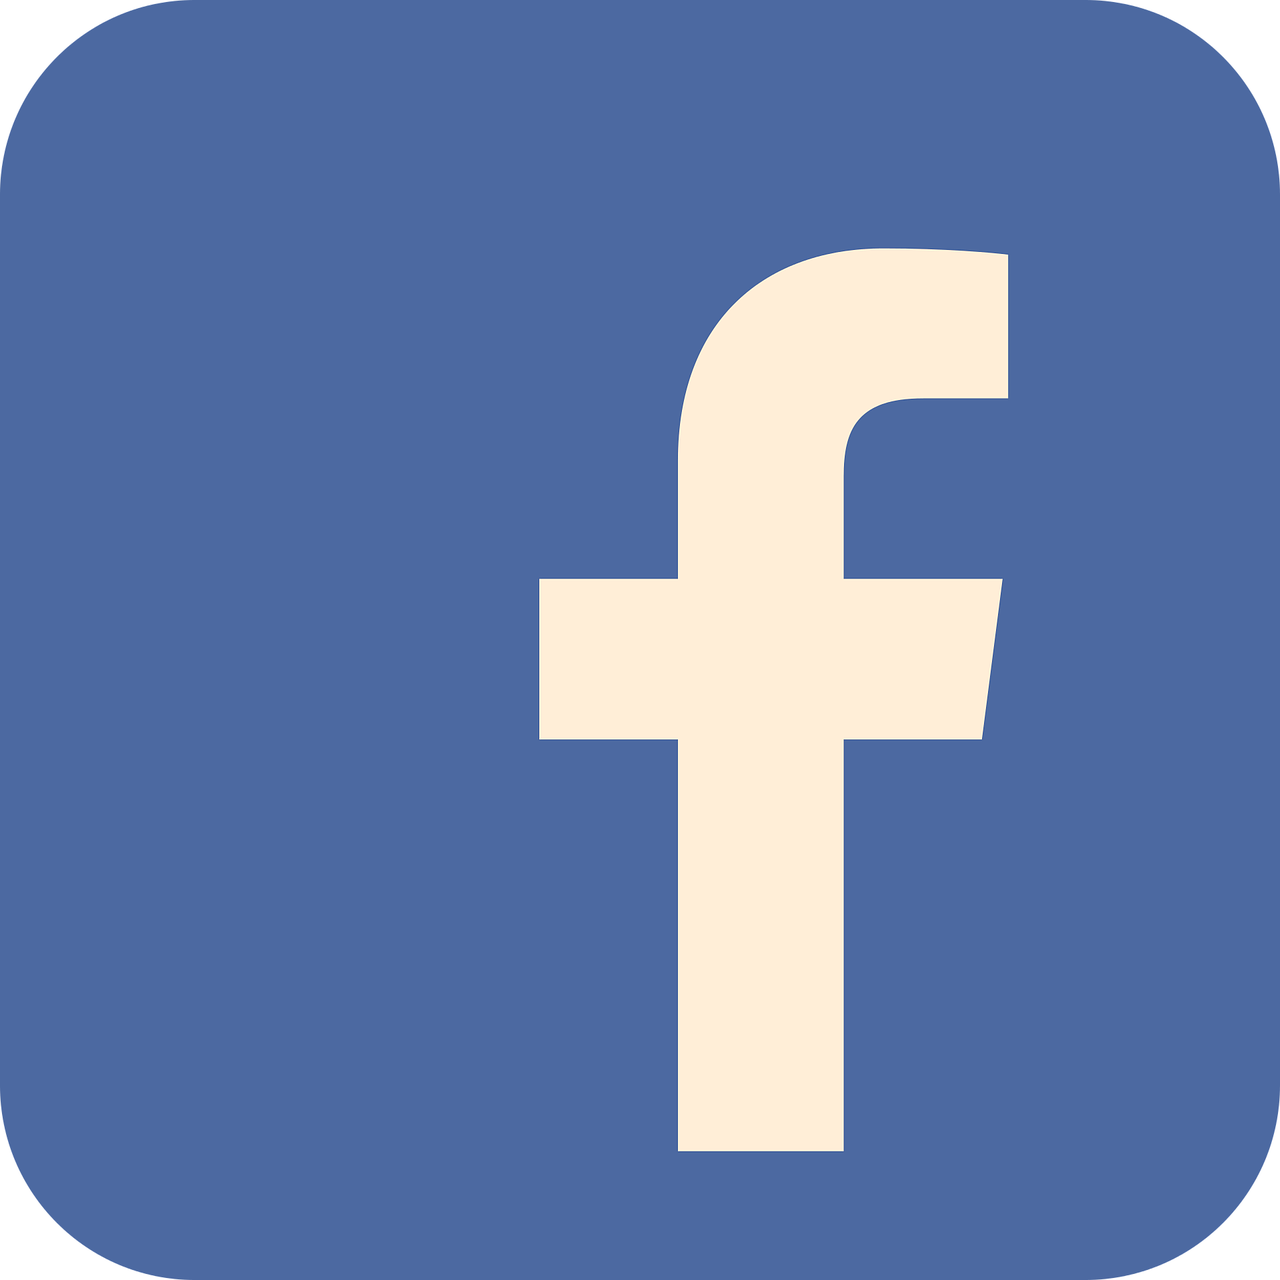 Cambiando tu Correo Electrónico de Facebook: ¿Qué Puede Pasar?